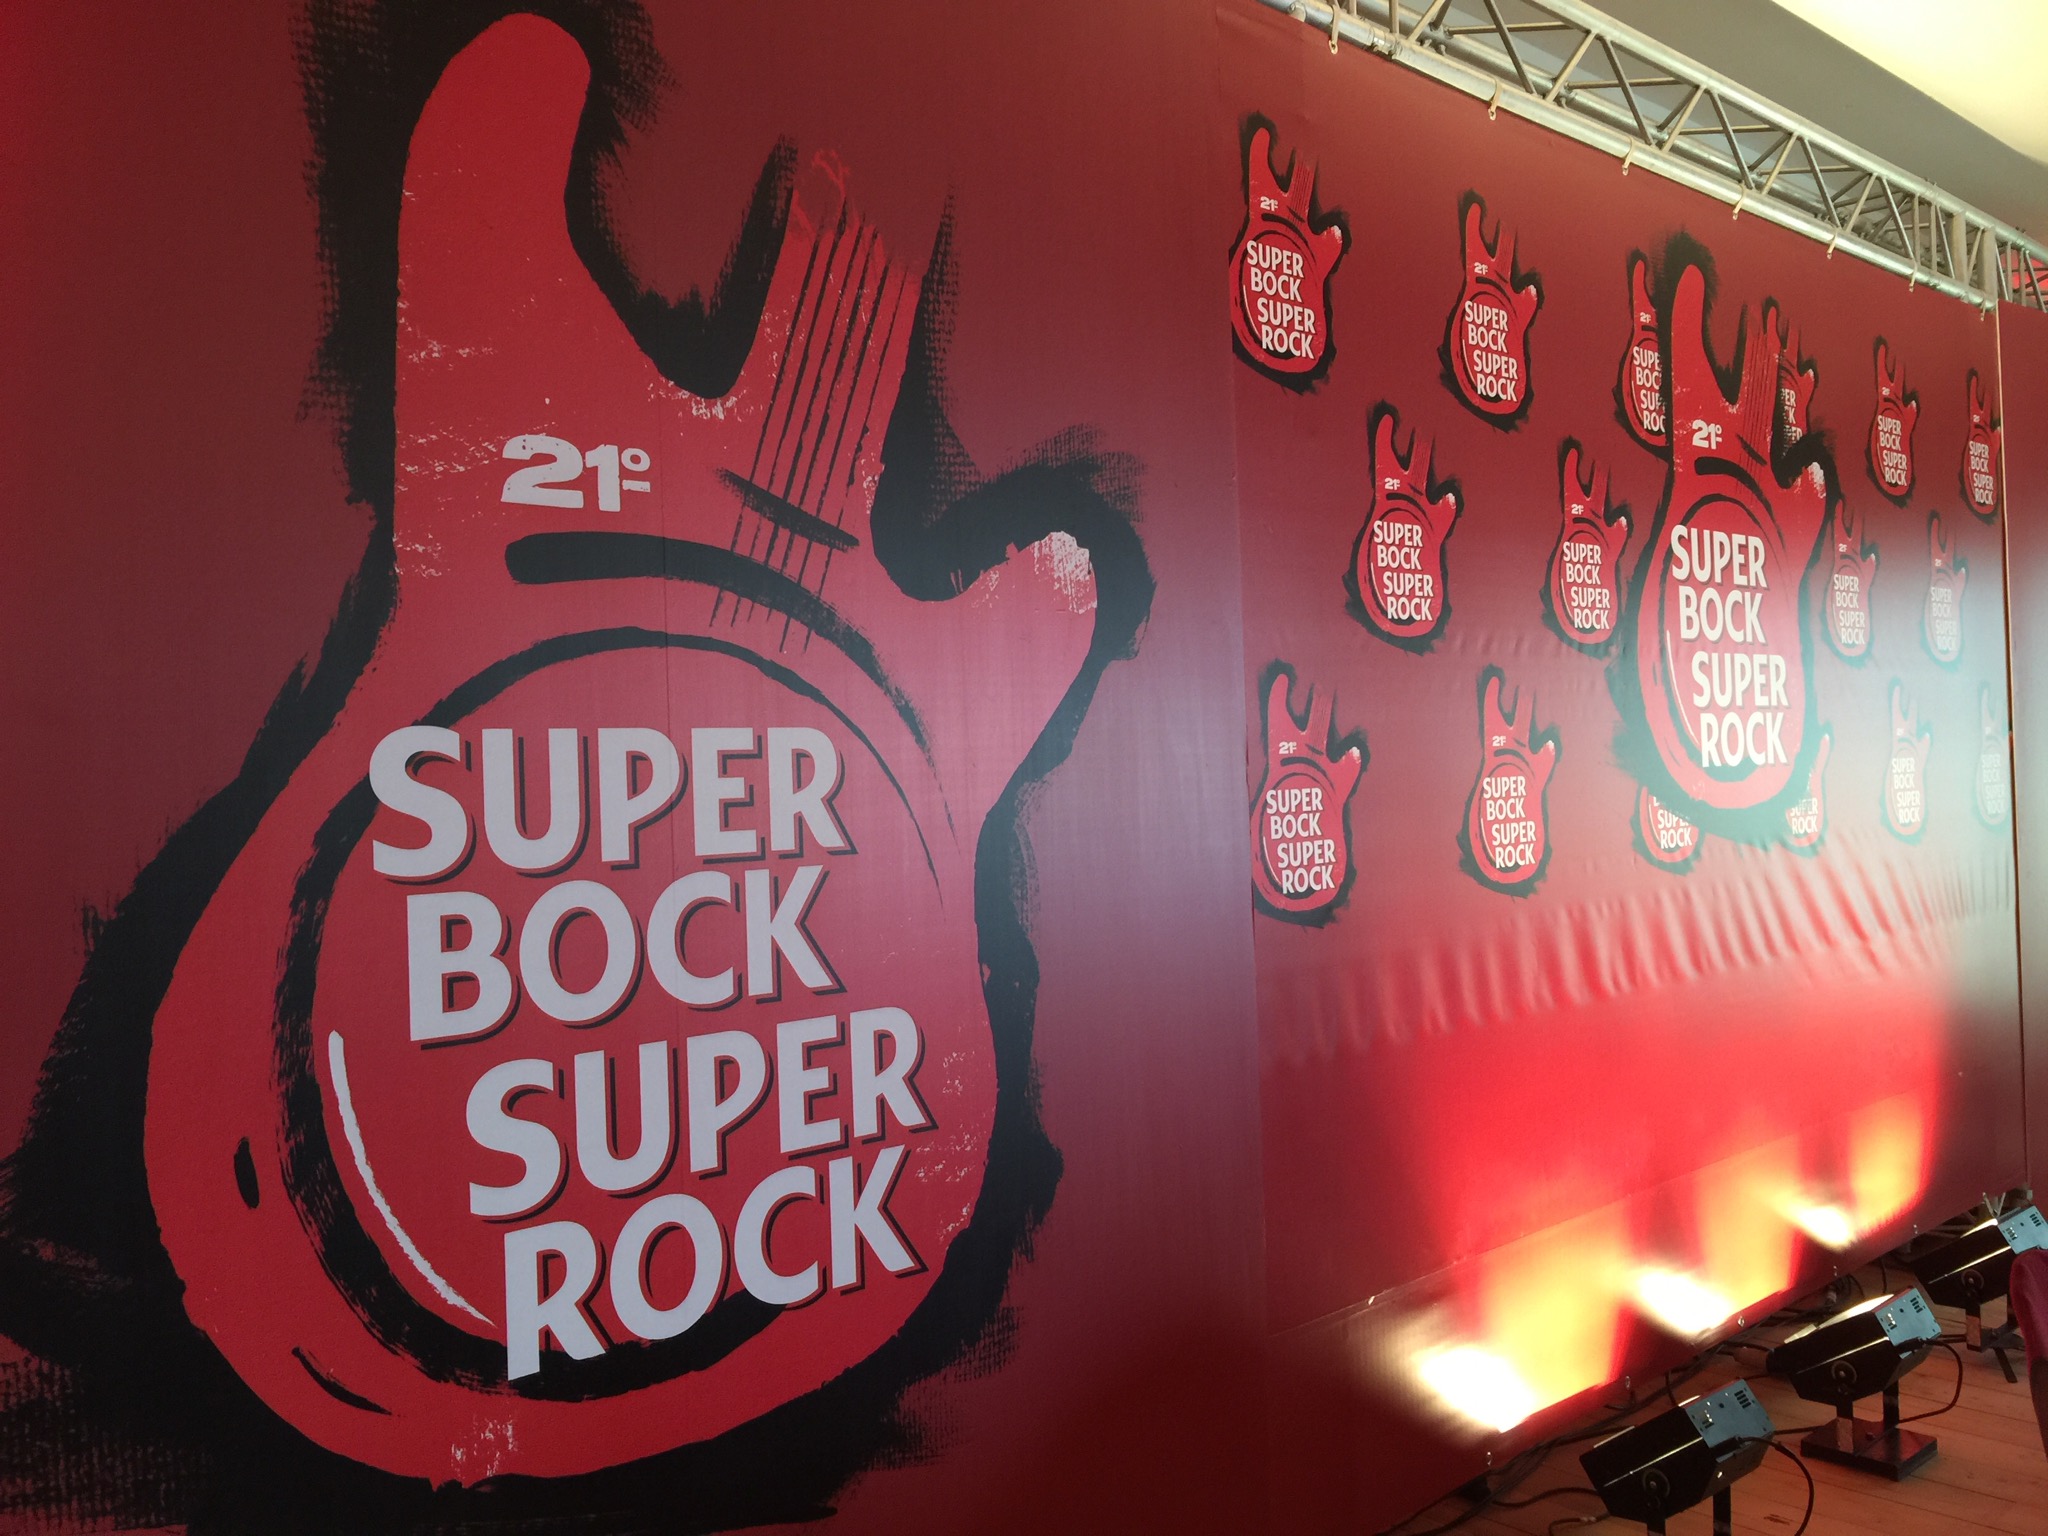 Super Bock Super Rock sai do Meco rumo ao Parque das Nações